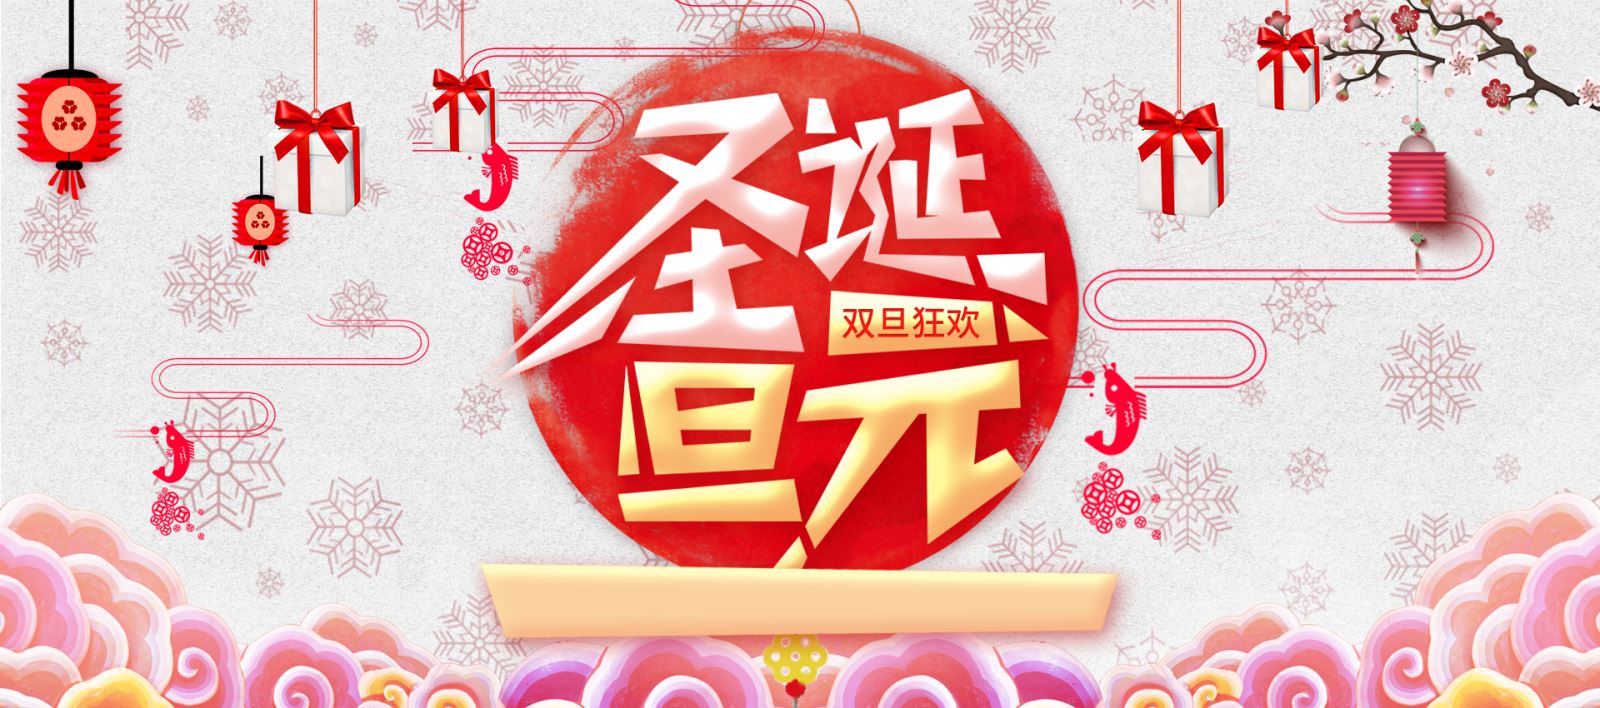 2017.12.25 年末武汉圣诞/元旦最全攻略来了！演唱会、灯光节、舞台剧…都在这条微信里！